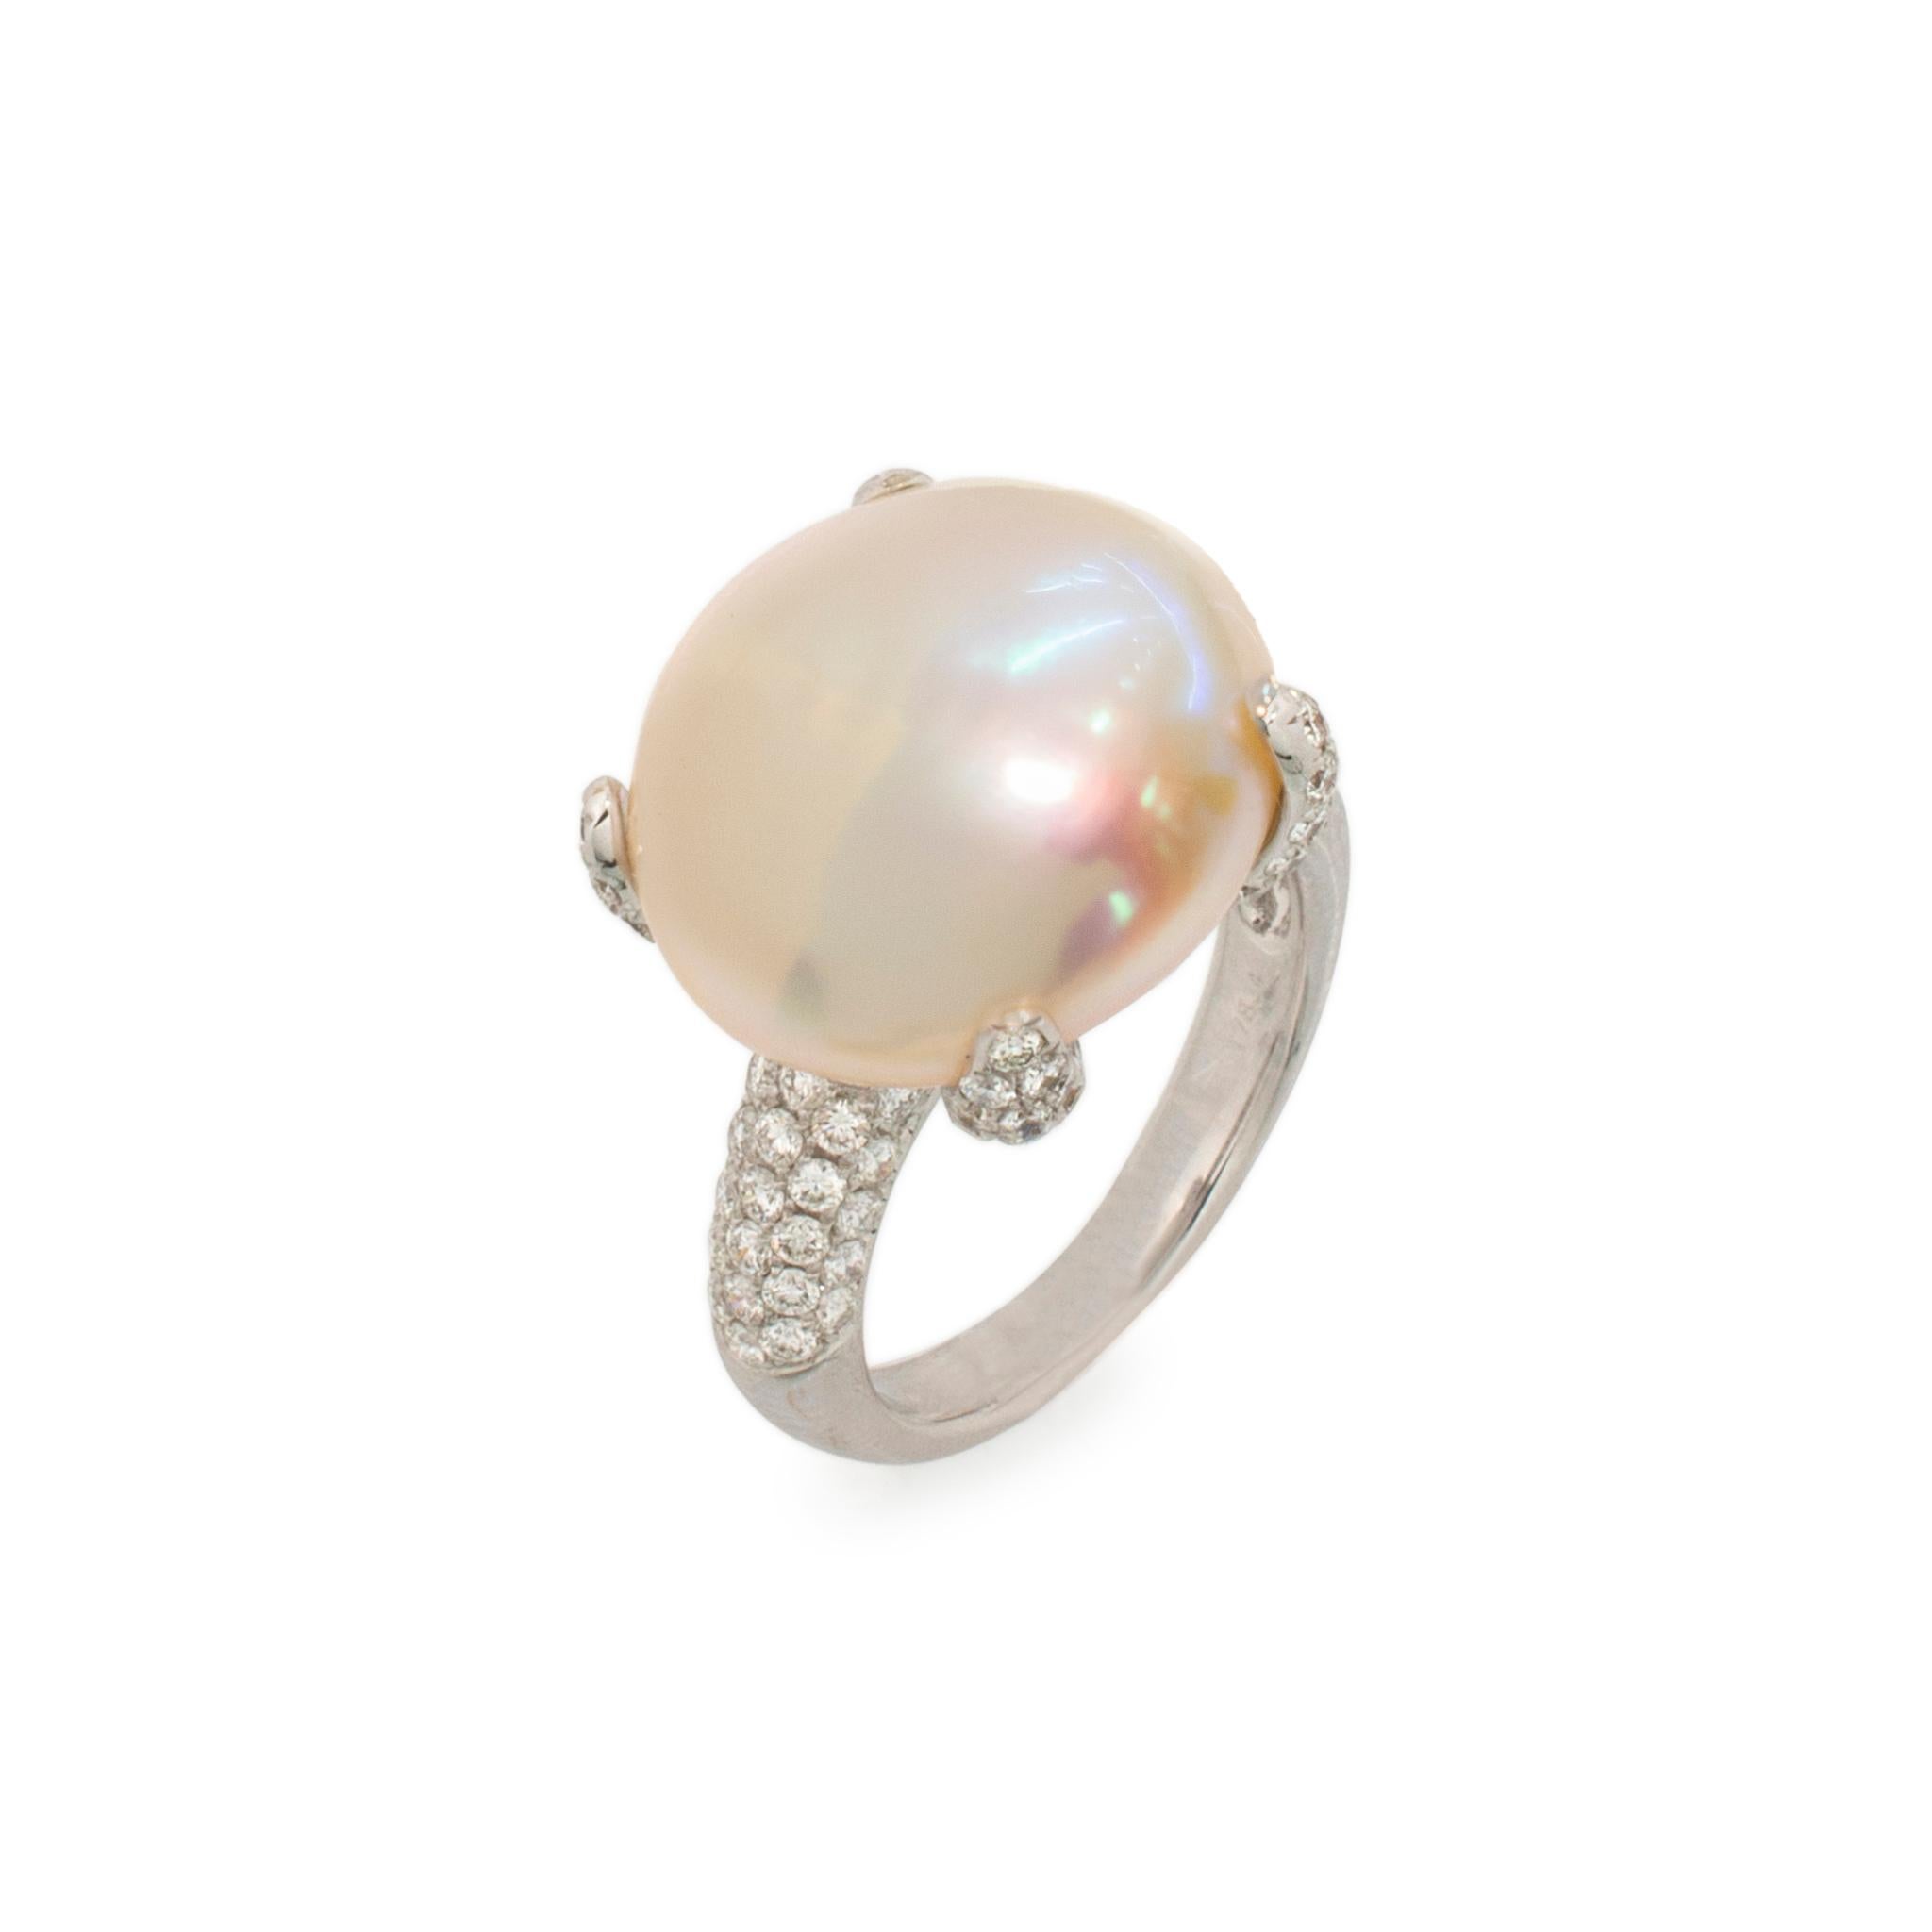 Genre : Mesdames

Type de métal : Or blanc 18K

Taille de l'anneau : 6.5

Poids total : 9,88 grammes

Bague de cocktail en or blanc 18K diamantée avec une perle naturelle et une tige demi-ronde.

Gravé 